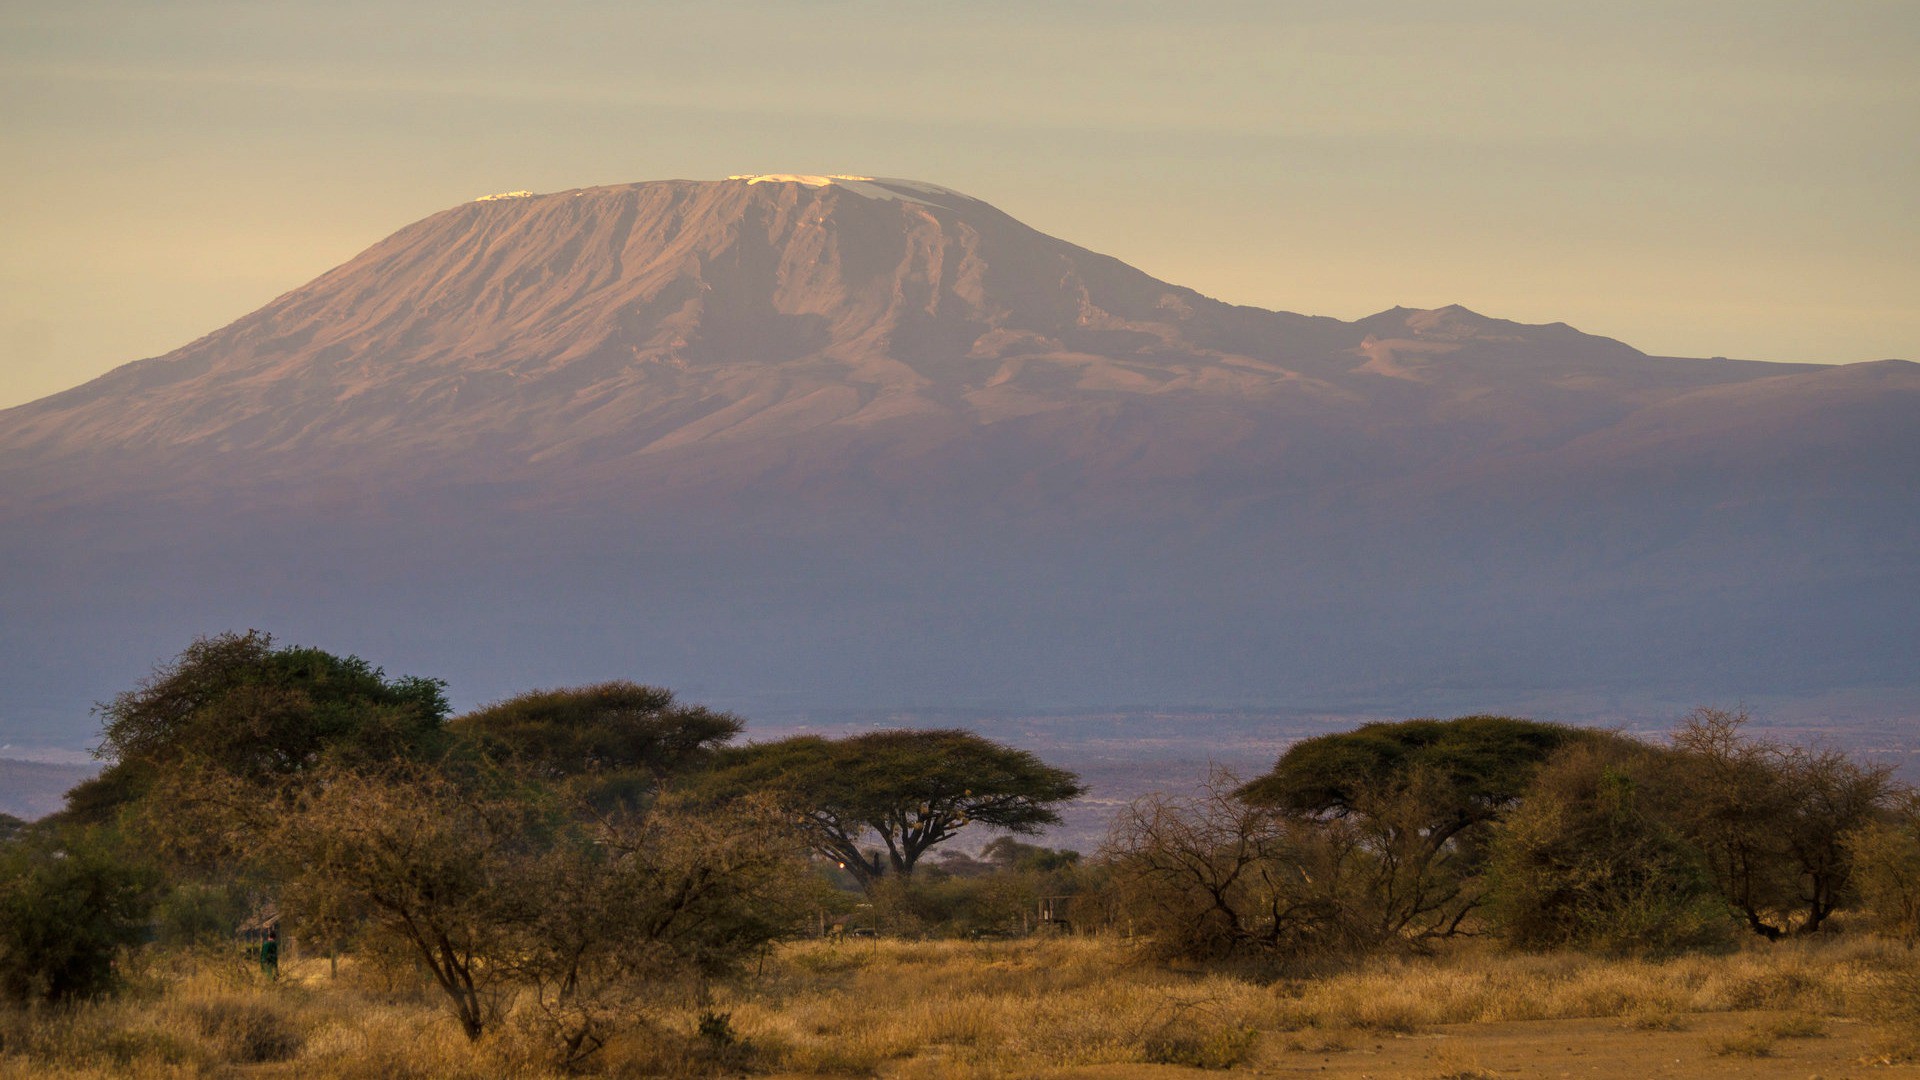 Le pape devrait prochainement admirer les paysages du Kenya (Photo:Pablo Necochea/Flickr/CC BY-NC 2.0)